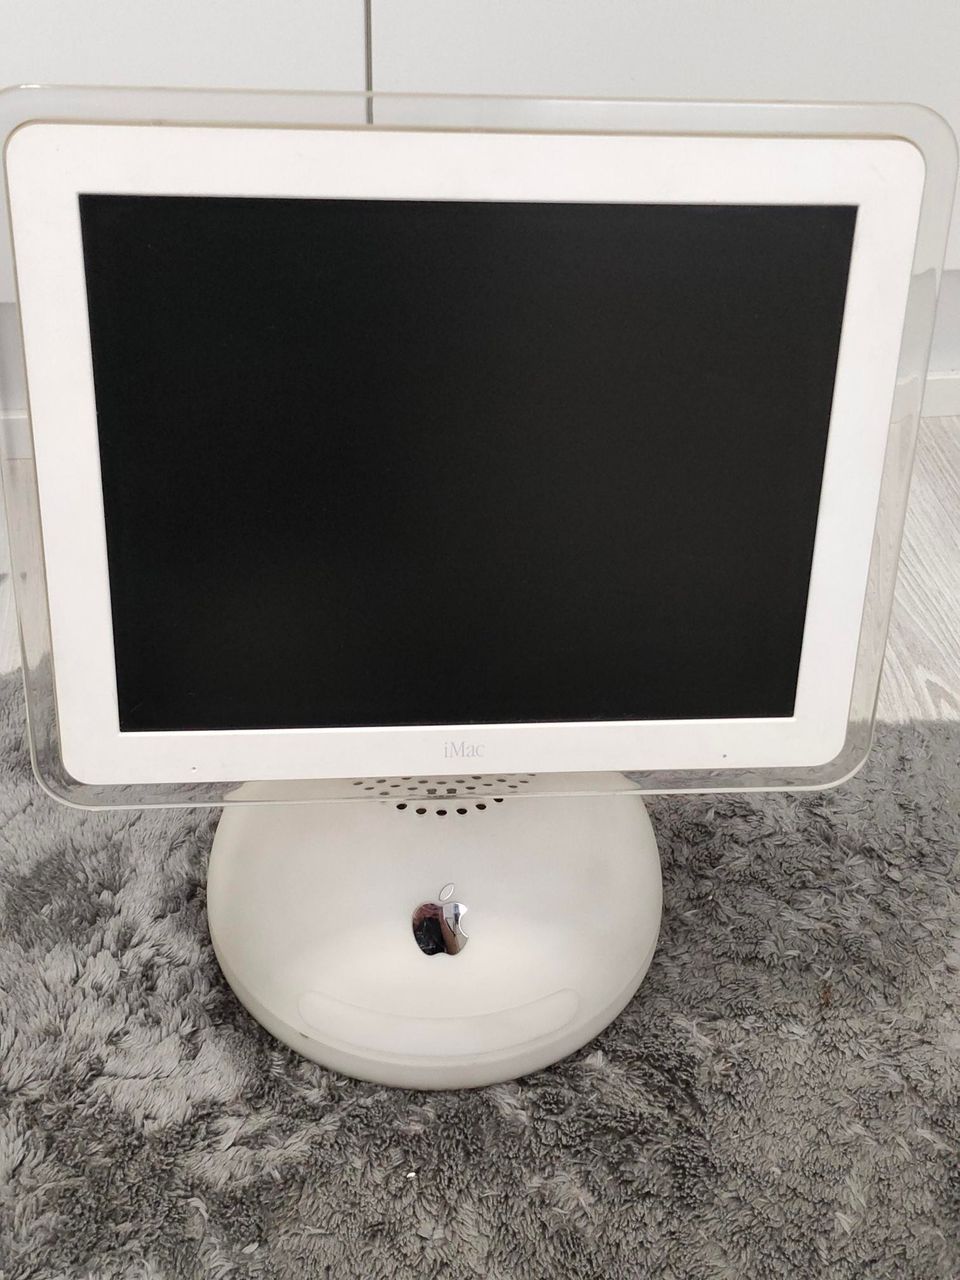 Apple iMac G4 "lampunjalka" (2002)